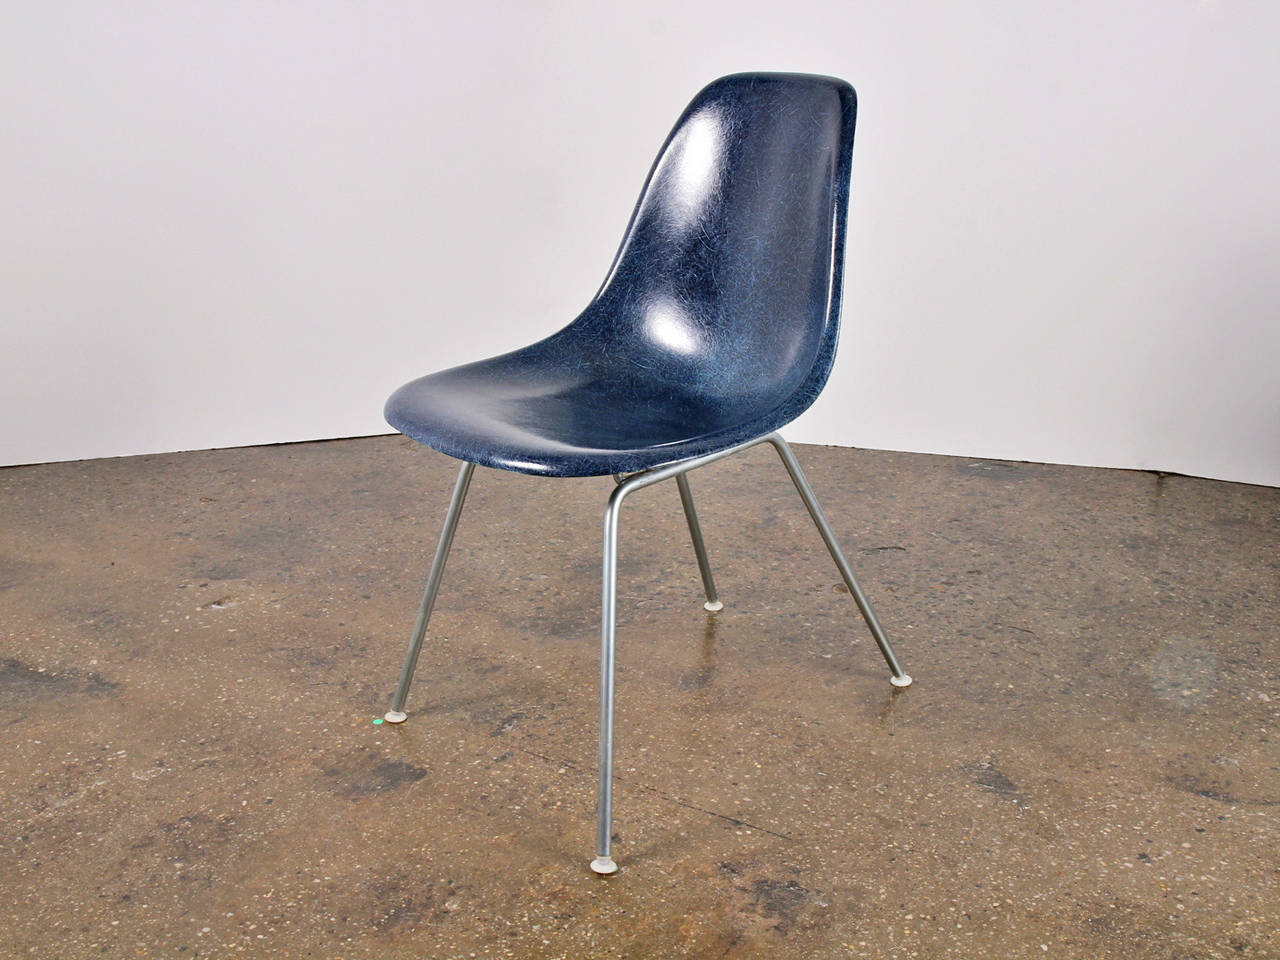 Original 1960er Jahre geformt Fiberglasschale Stühle in Marineblau, entworfen von Charles und Ray Eames für Herman Miller. Die glänzenden Schalen sind im Originalzustand, jede mit einer ausgeprägten feinen Textur.  Hier auf einem Vintage-H-Sockel